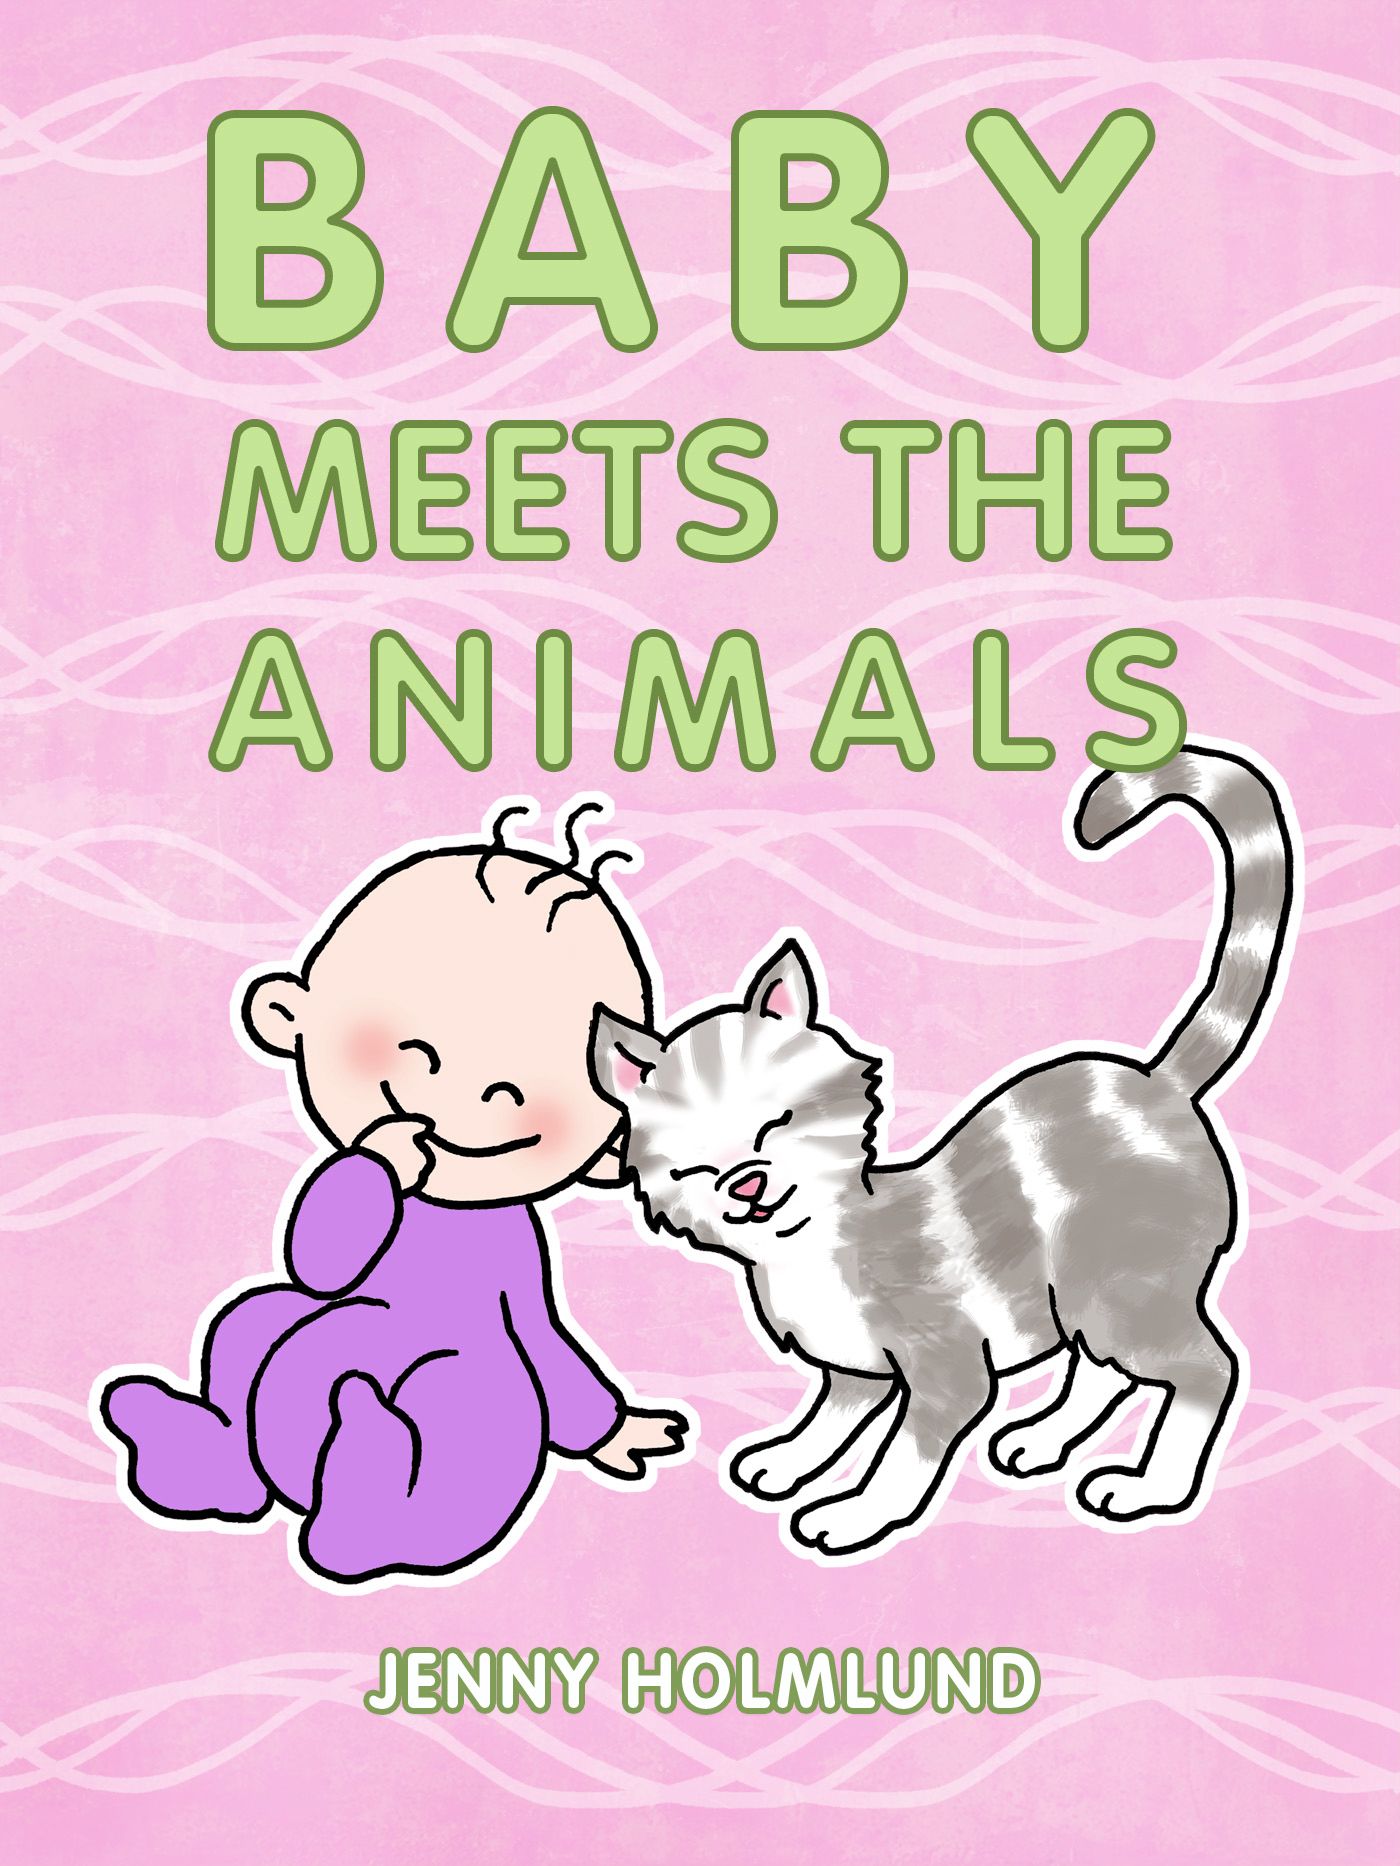 Baby Meets the Animals, e-bog af Jenny Holmlund